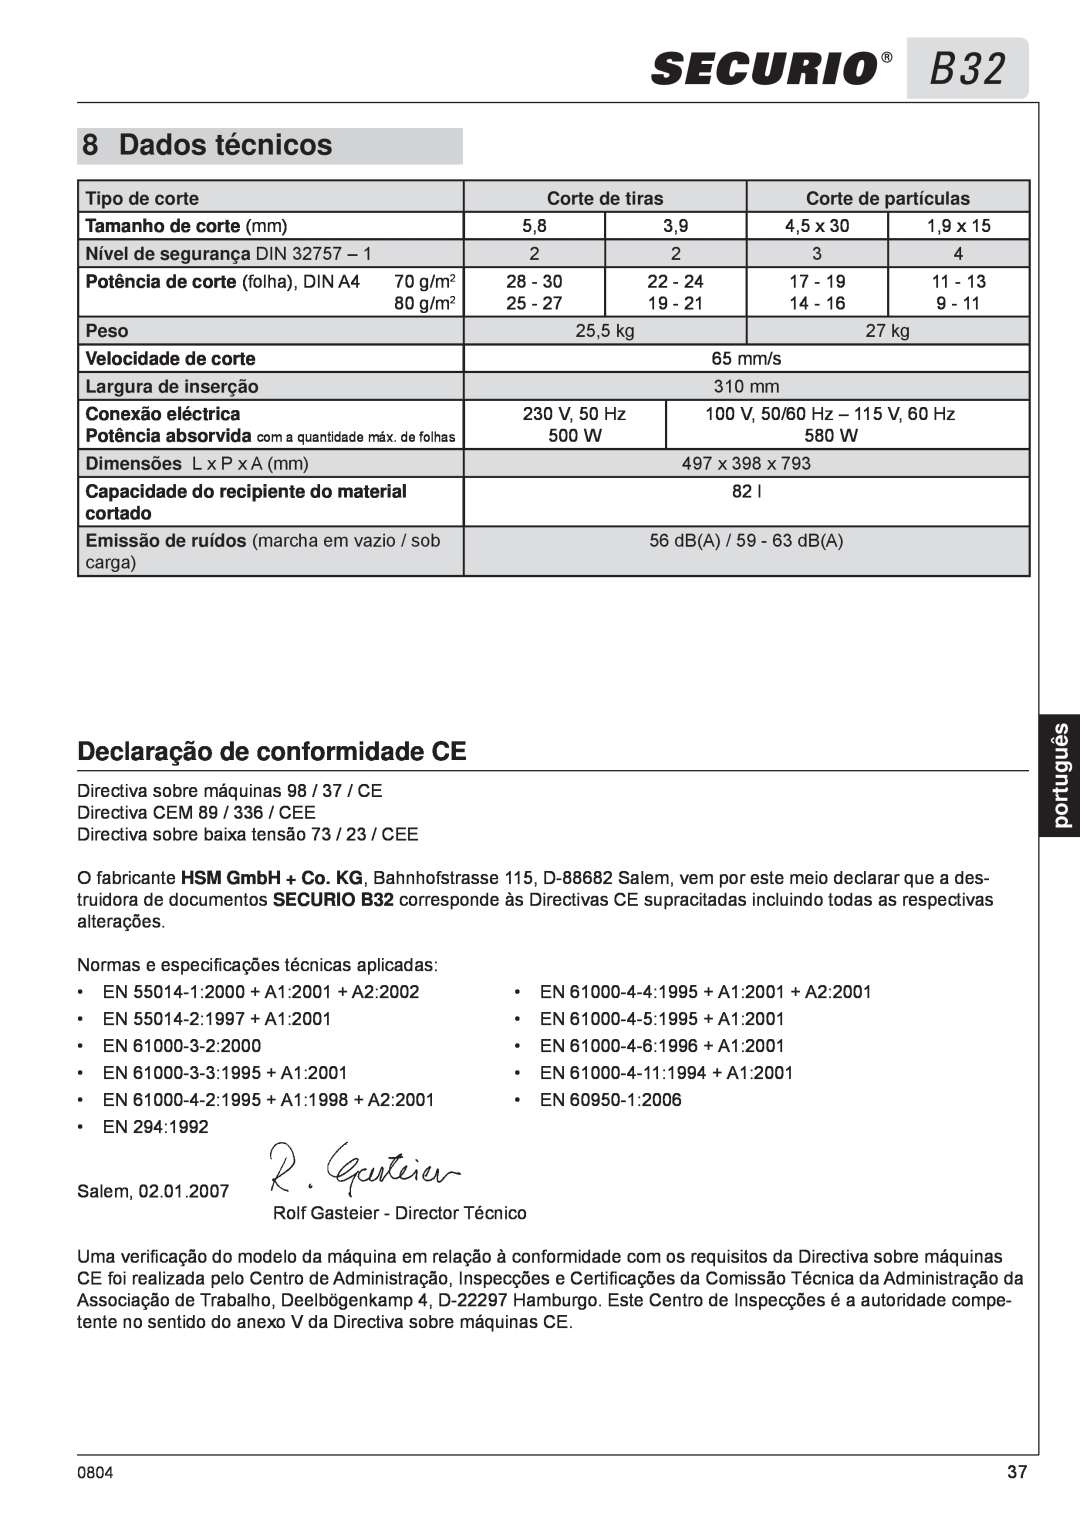 HSM B32 manual Dados técnicos, Declaração de conformidade CE, português 